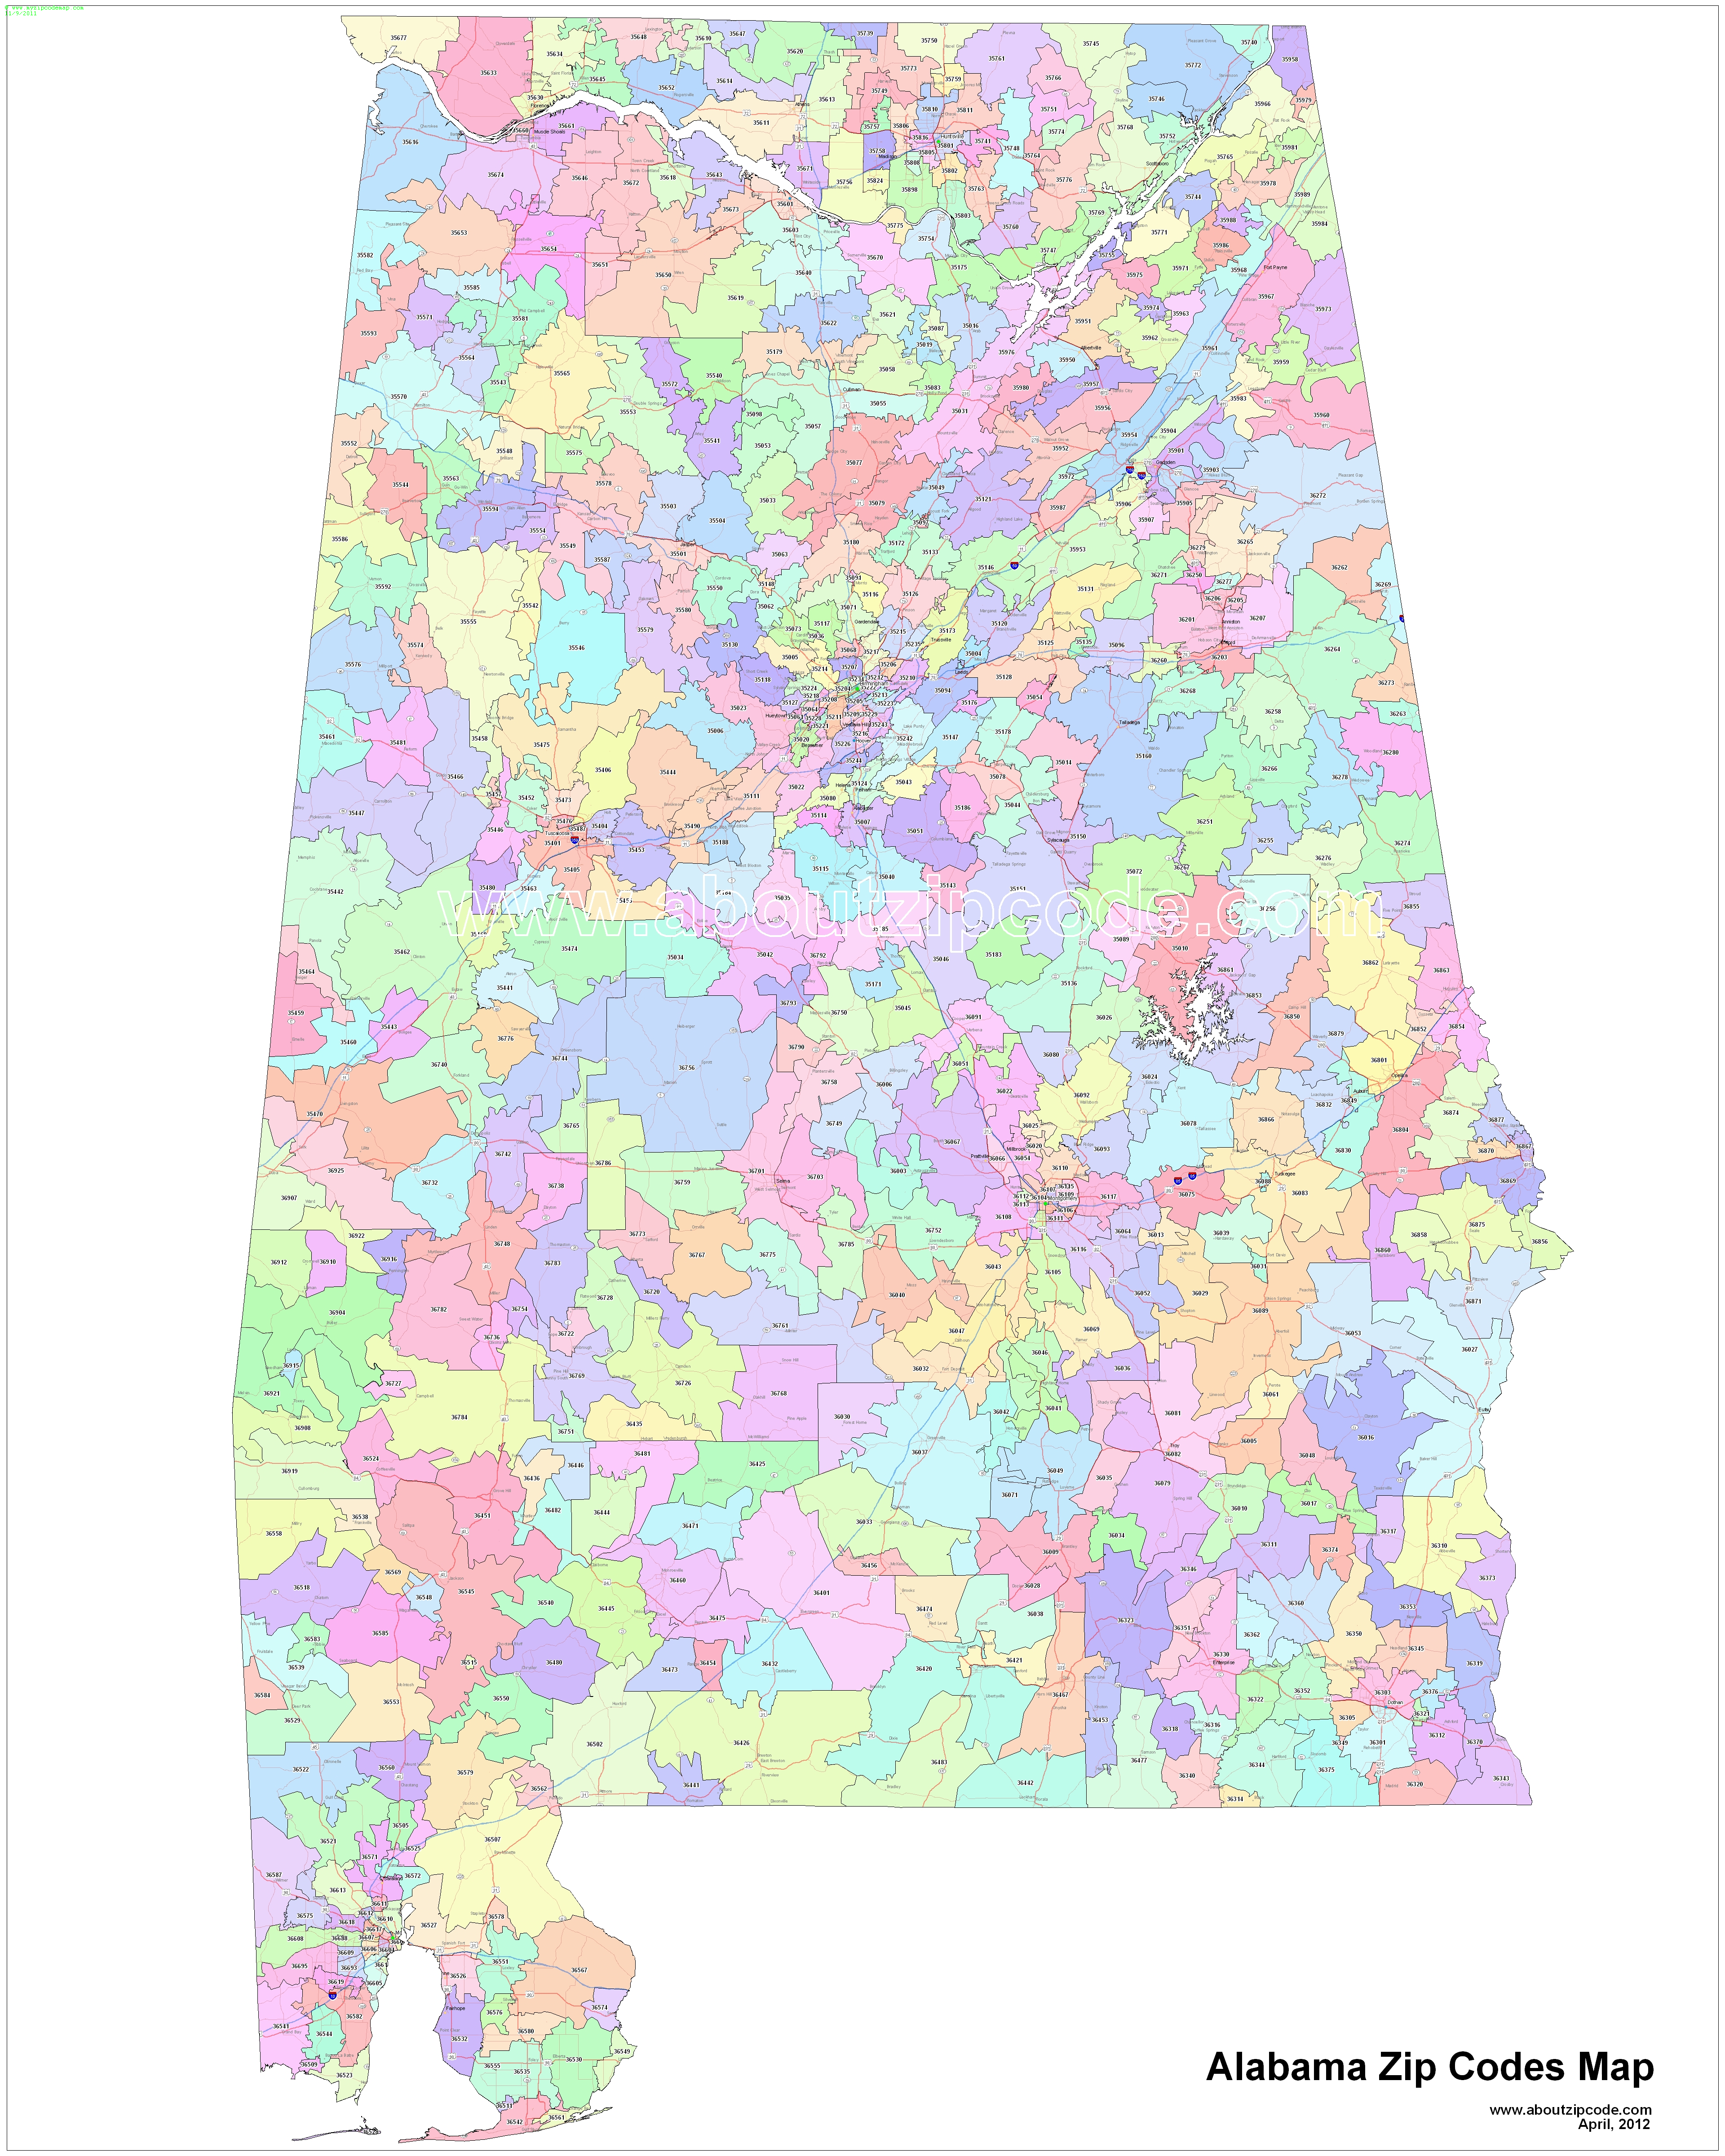 florence al zip code map Alabama Zip Code Maps Free Alabama Zip Code Maps florence al zip code map